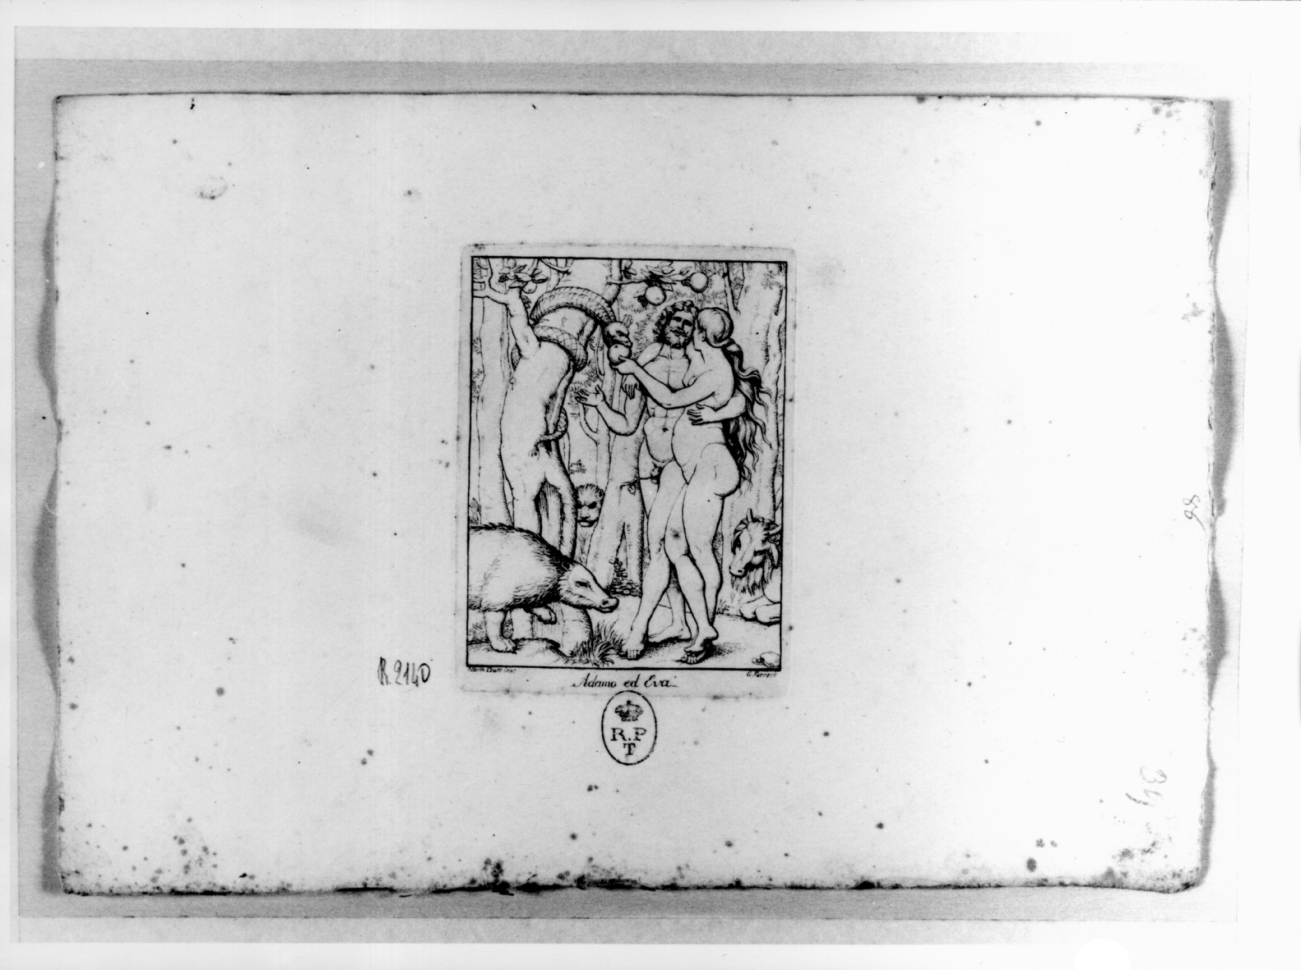 Adamo ed Eva, Eva offre il frutto ad Adamo (stampa, serie) di Ferrero Giovanni Francesco, Durer Albrecht (sec. XIX)